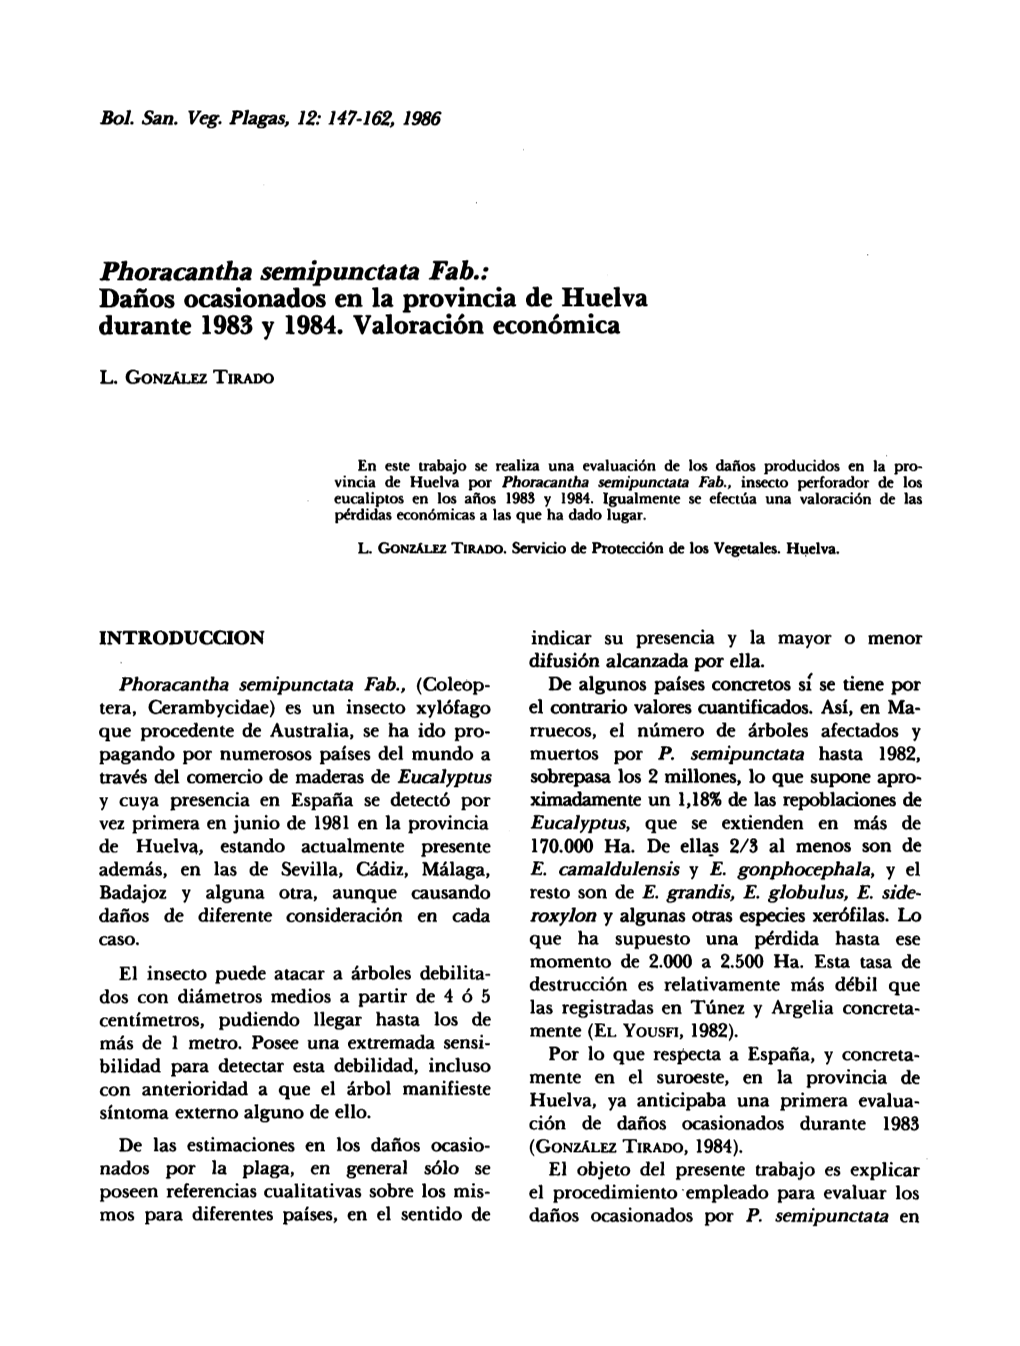 Phoracantha Semipunctata Tab.: Daños Ocasionados En La Provincia De Huelva Durante 1983 Y 1984